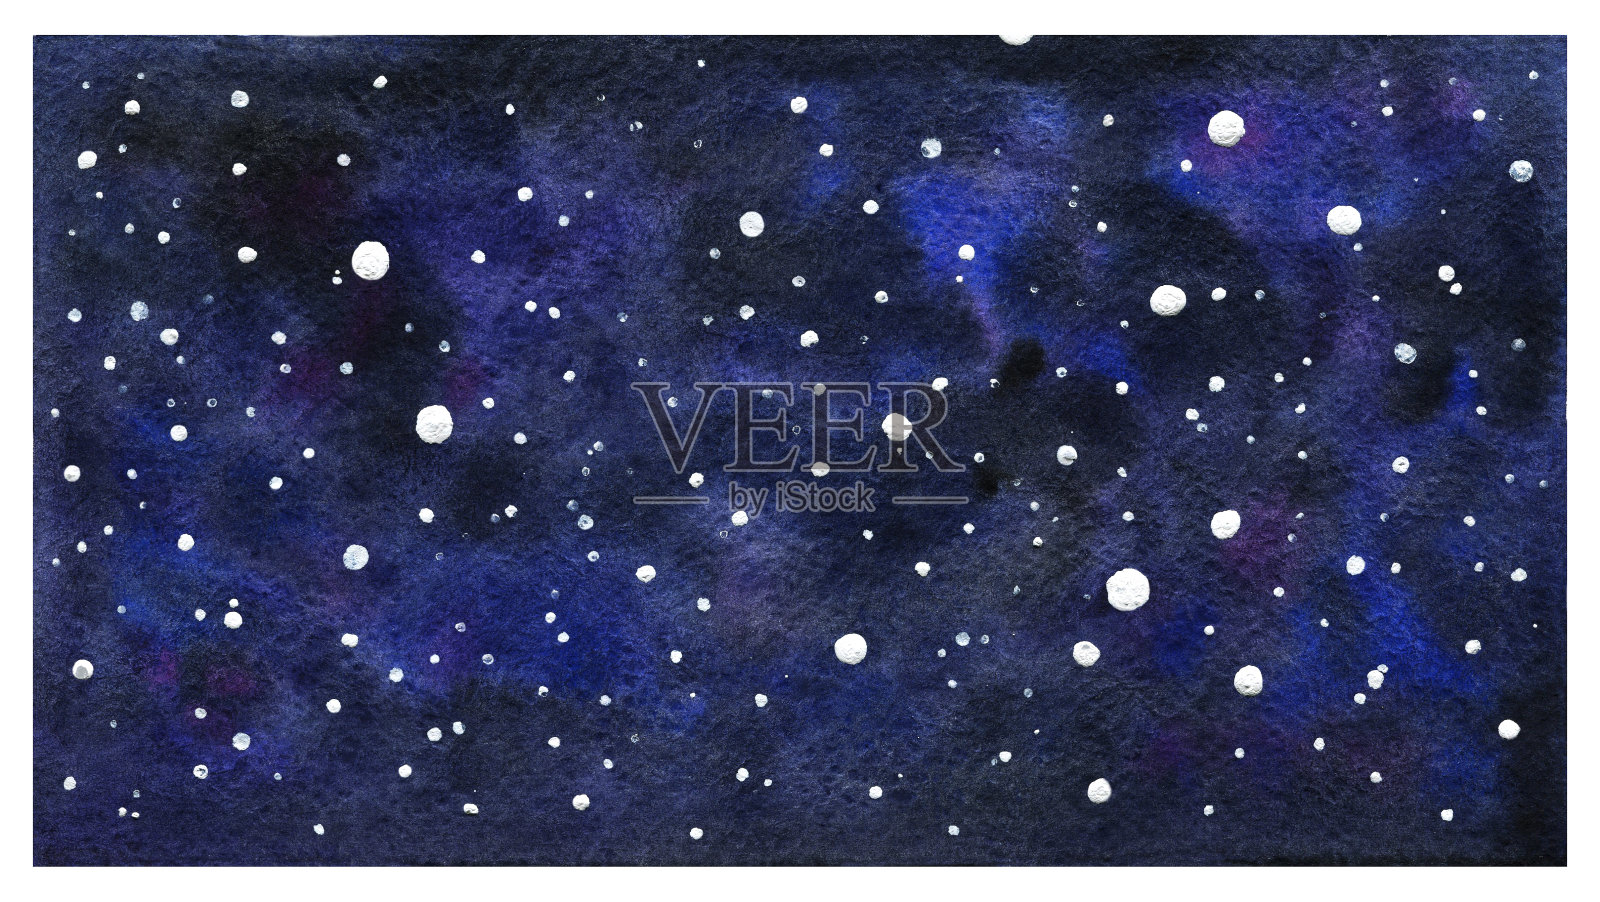 宇宙的水彩纹理。一个别致的蓝色和紫色点缀着白色星星的装饰品。神秘的，装饰背景的矩形形状。天文学、星系、宇宙插画图片素材